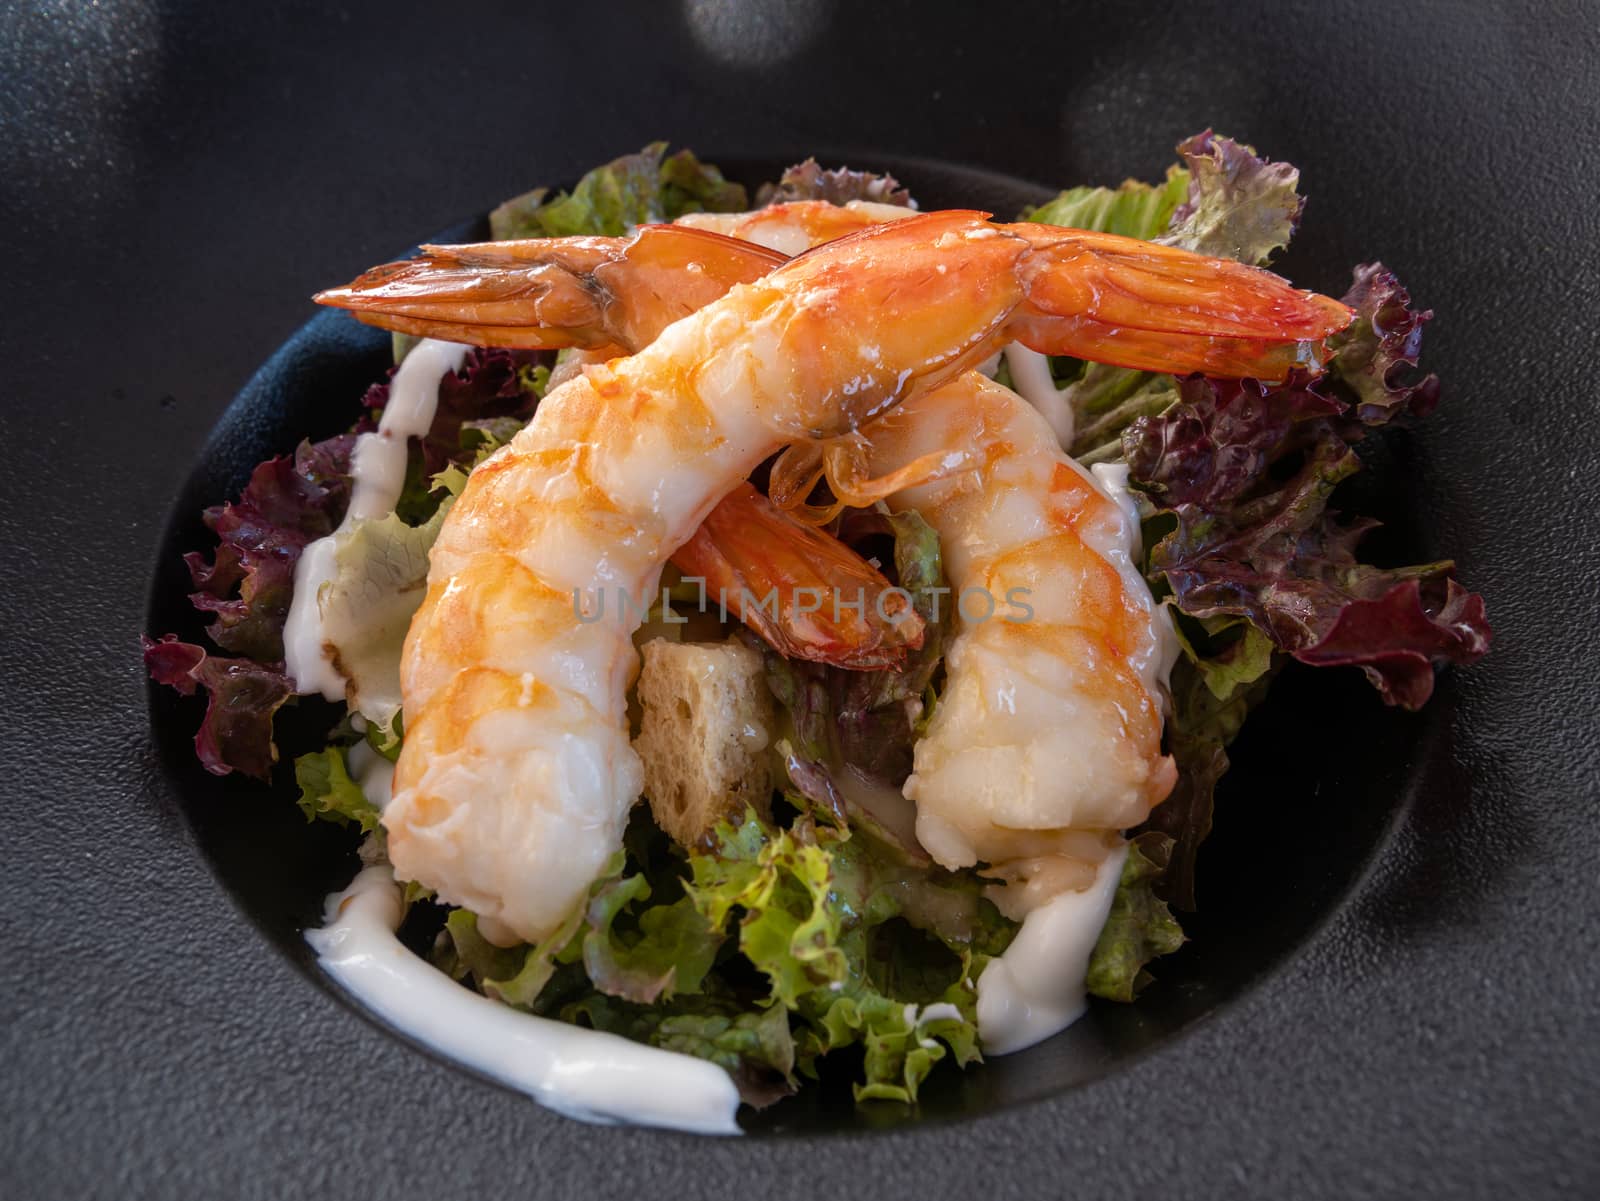 Shrimp caesar salad in white plate, Mediterranean cuisine.